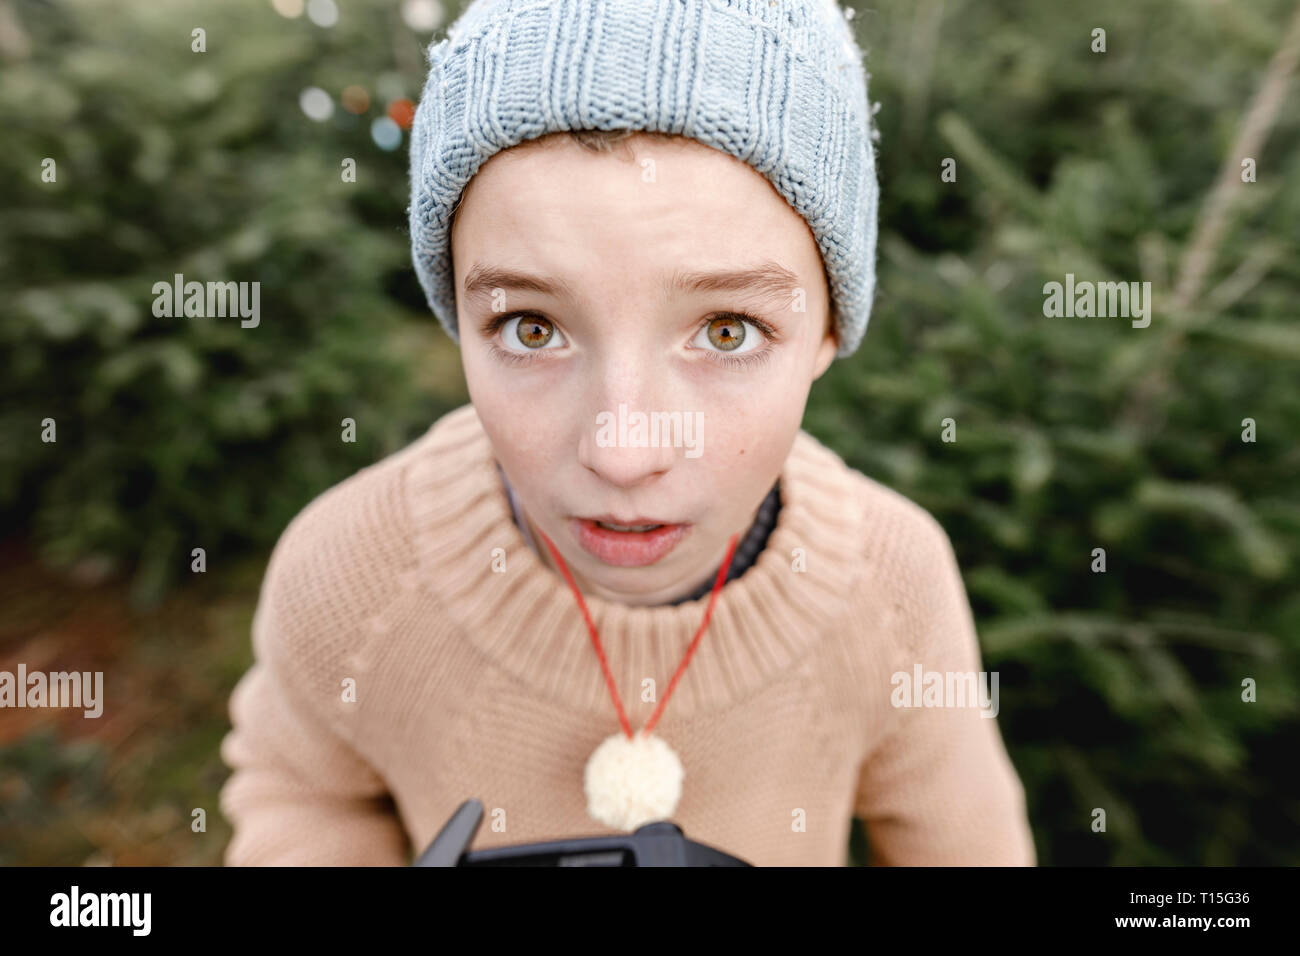 Portrait of a boy wearing woolen hat Stock Photo